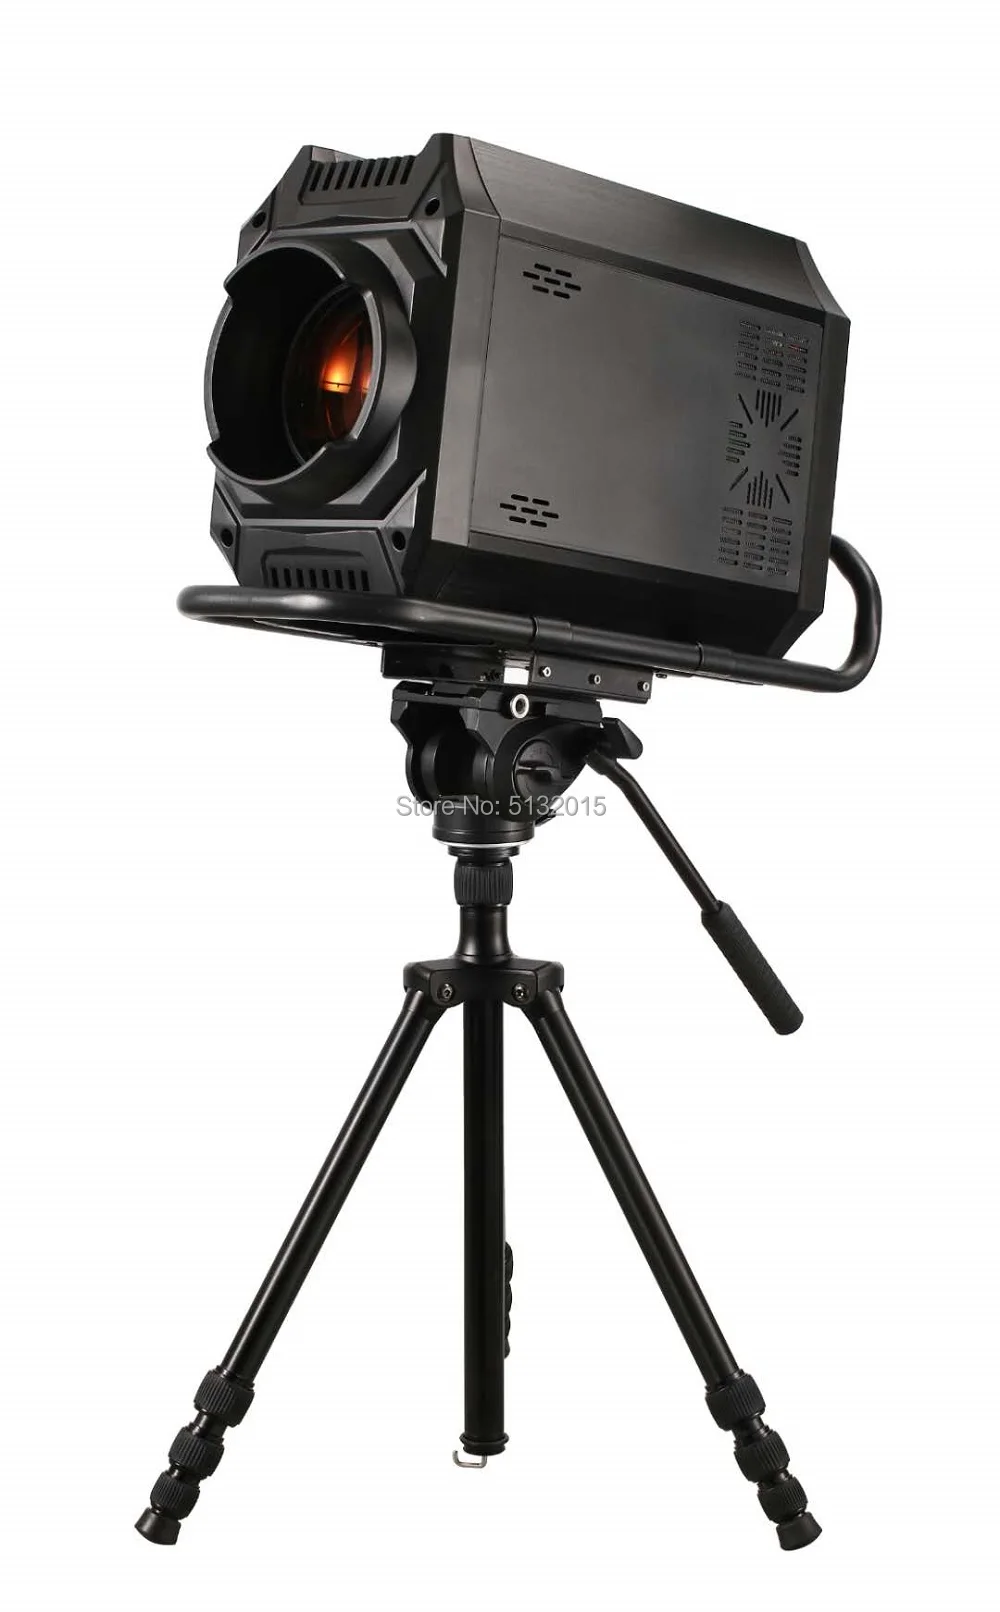 360 Вт светодиодный следящий прожектор DMX Pro оборудование для сценического освещения для Luz DJ Disco для вечеринки, свадьбы, торжества, живой музыки напрокат с Flightcase